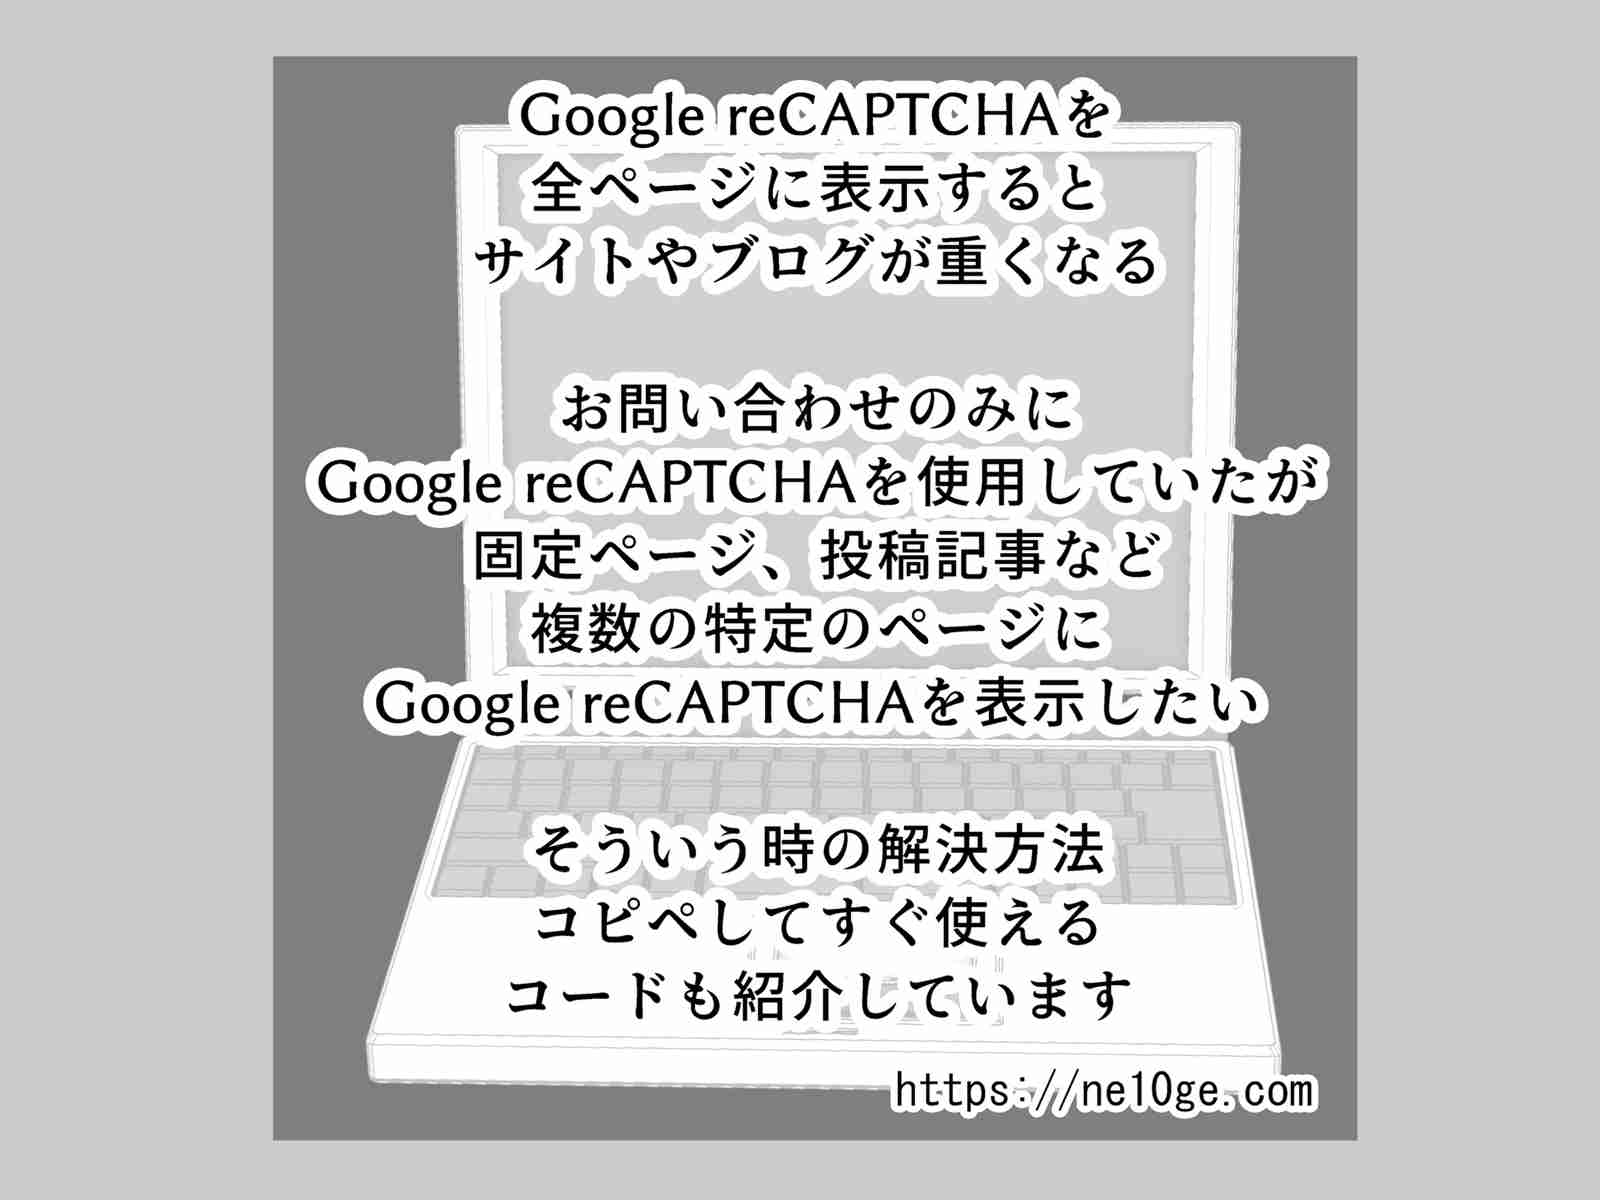 特定の固定ページや投稿ページのみ、複数の固定ページや投稿記事に、ページを指定してGoogle reCAPTCHAを表示する方法、コードを紹介しています。